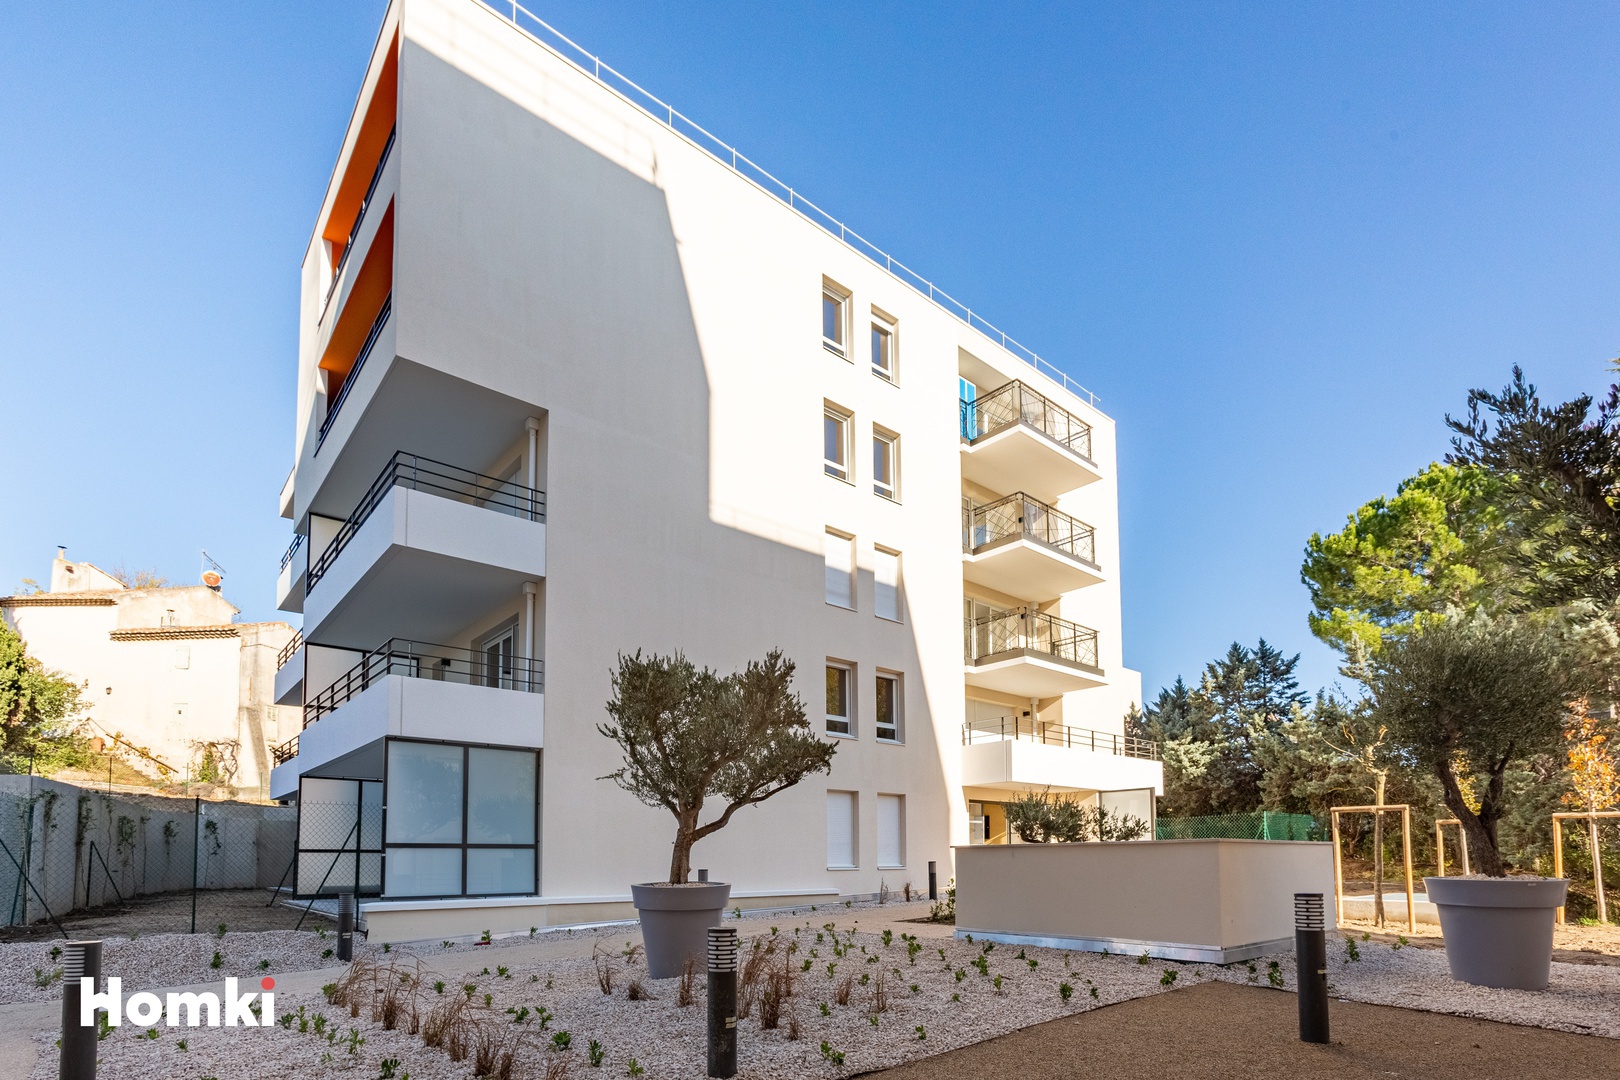 Homki - Vente Appartement  de 40.0 m² à Marseille 13011